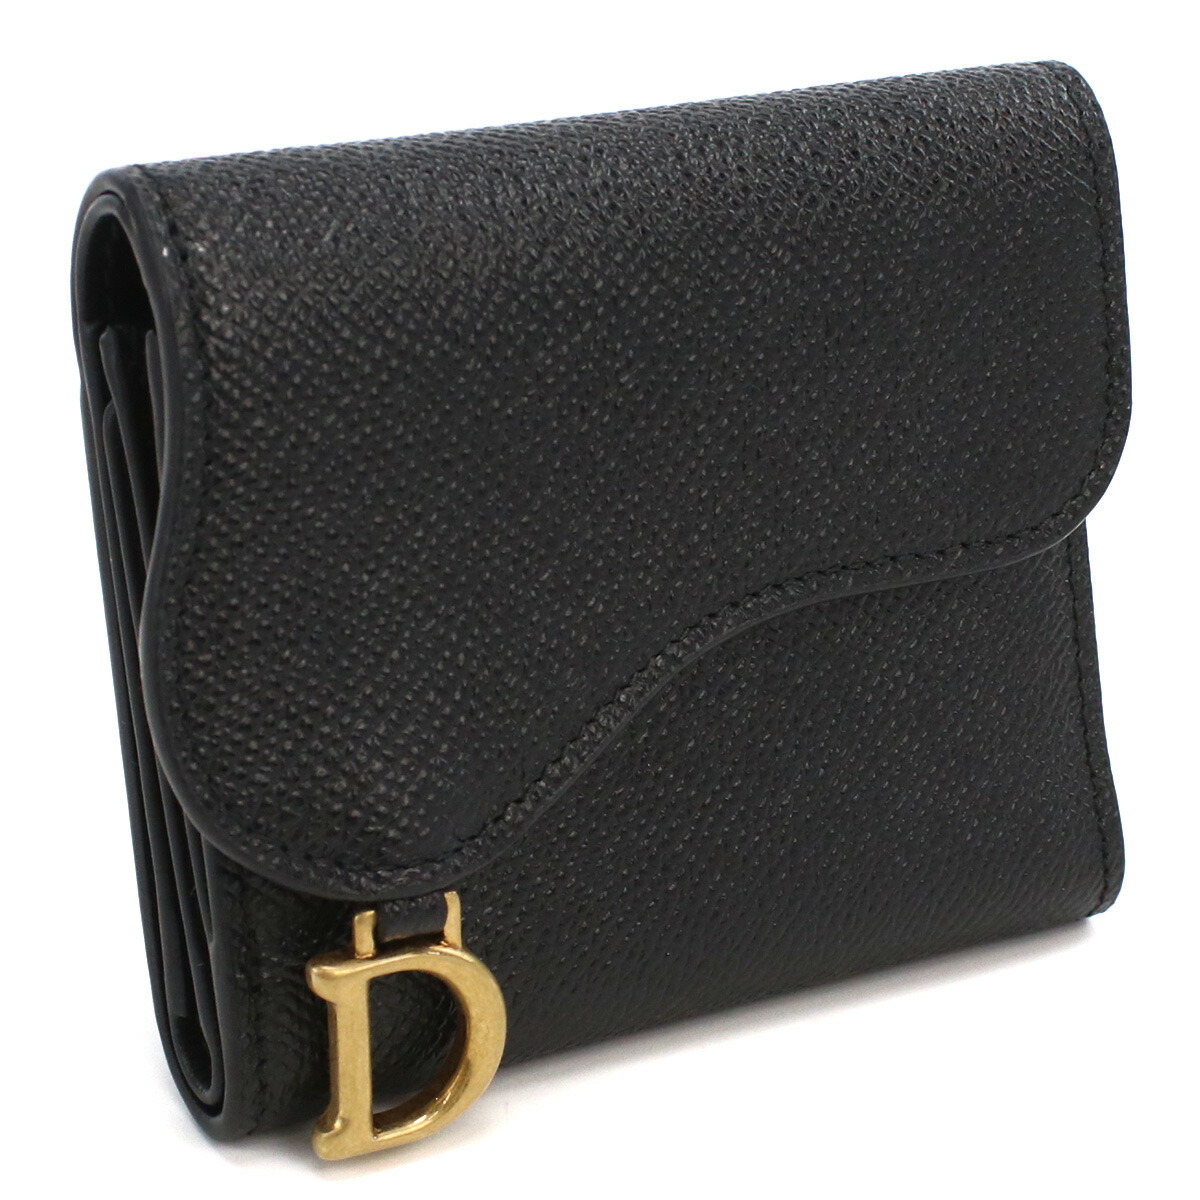 ブランドプラス / ディオール Christian Dior 3つ折り財布 ブランド